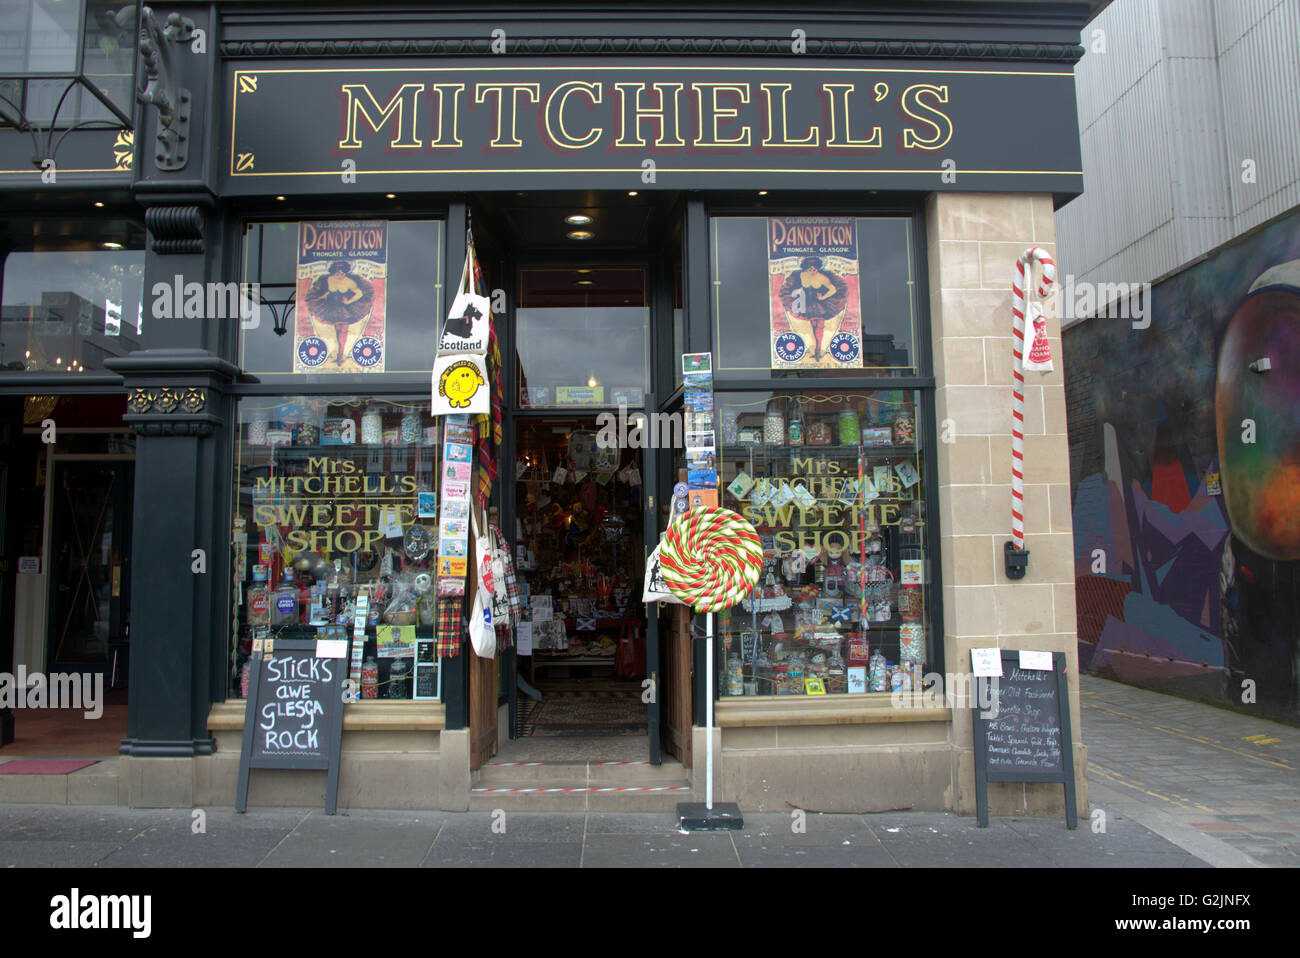 Mitchell's Sweet Shop, Glasgow. Neue wynd Lane Stockfoto